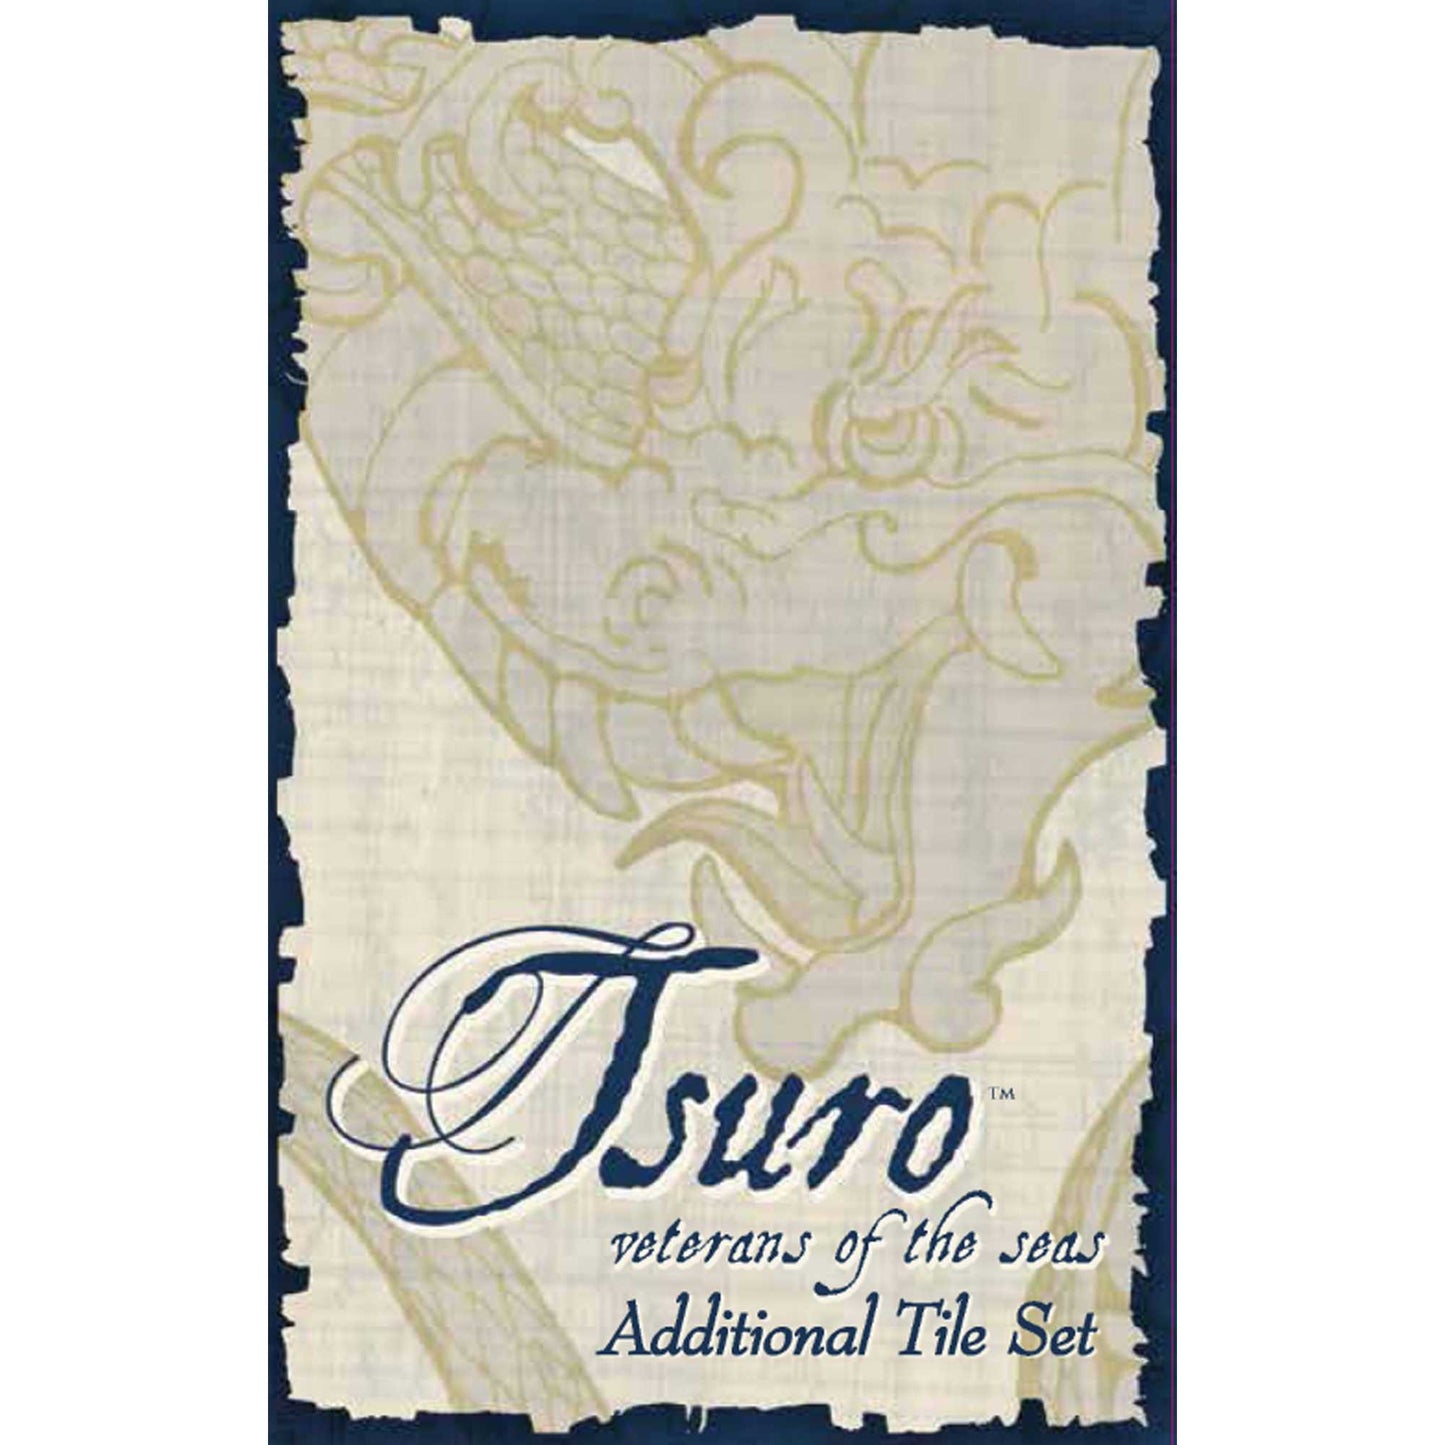 TSURO: VETERANS OF THE SEAS - ADDITIONAL TILE SET